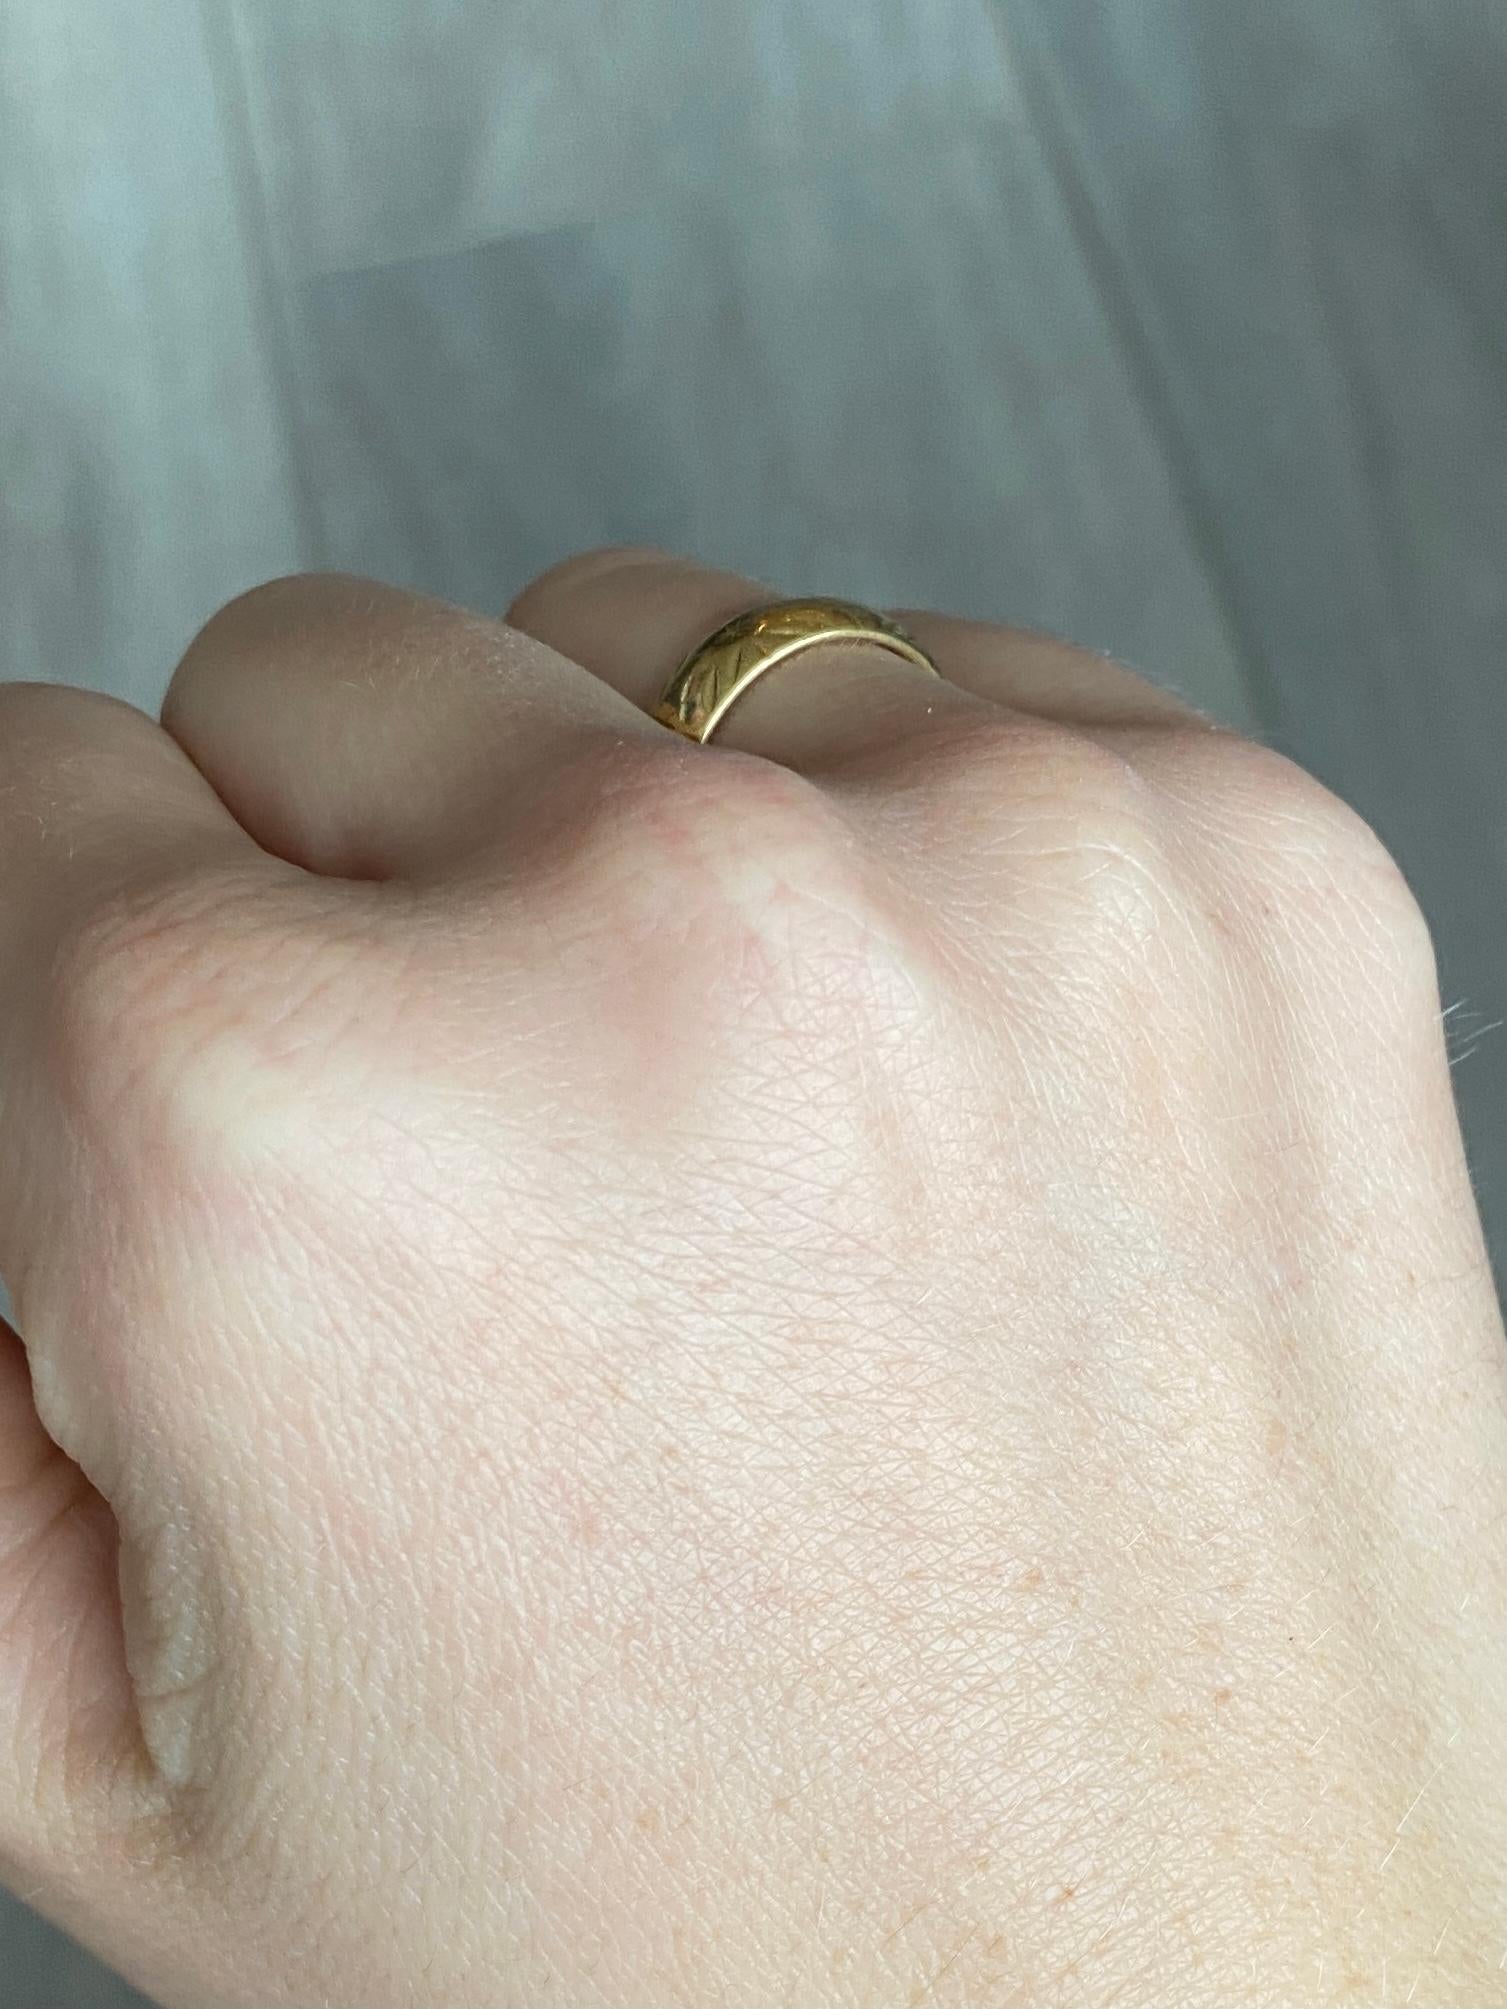 Die Gravur auf diesem 18-karätigen Goldband ist wunderschön. Dieser Ring eignet sich sowohl für die Hochzeit als auch für das tägliche Tragen. Vollständig gestempelt London 1971.

Ring Größe: L oder 5 3/4 
Bandbreite: 6mm

Gewicht: 5,1 g